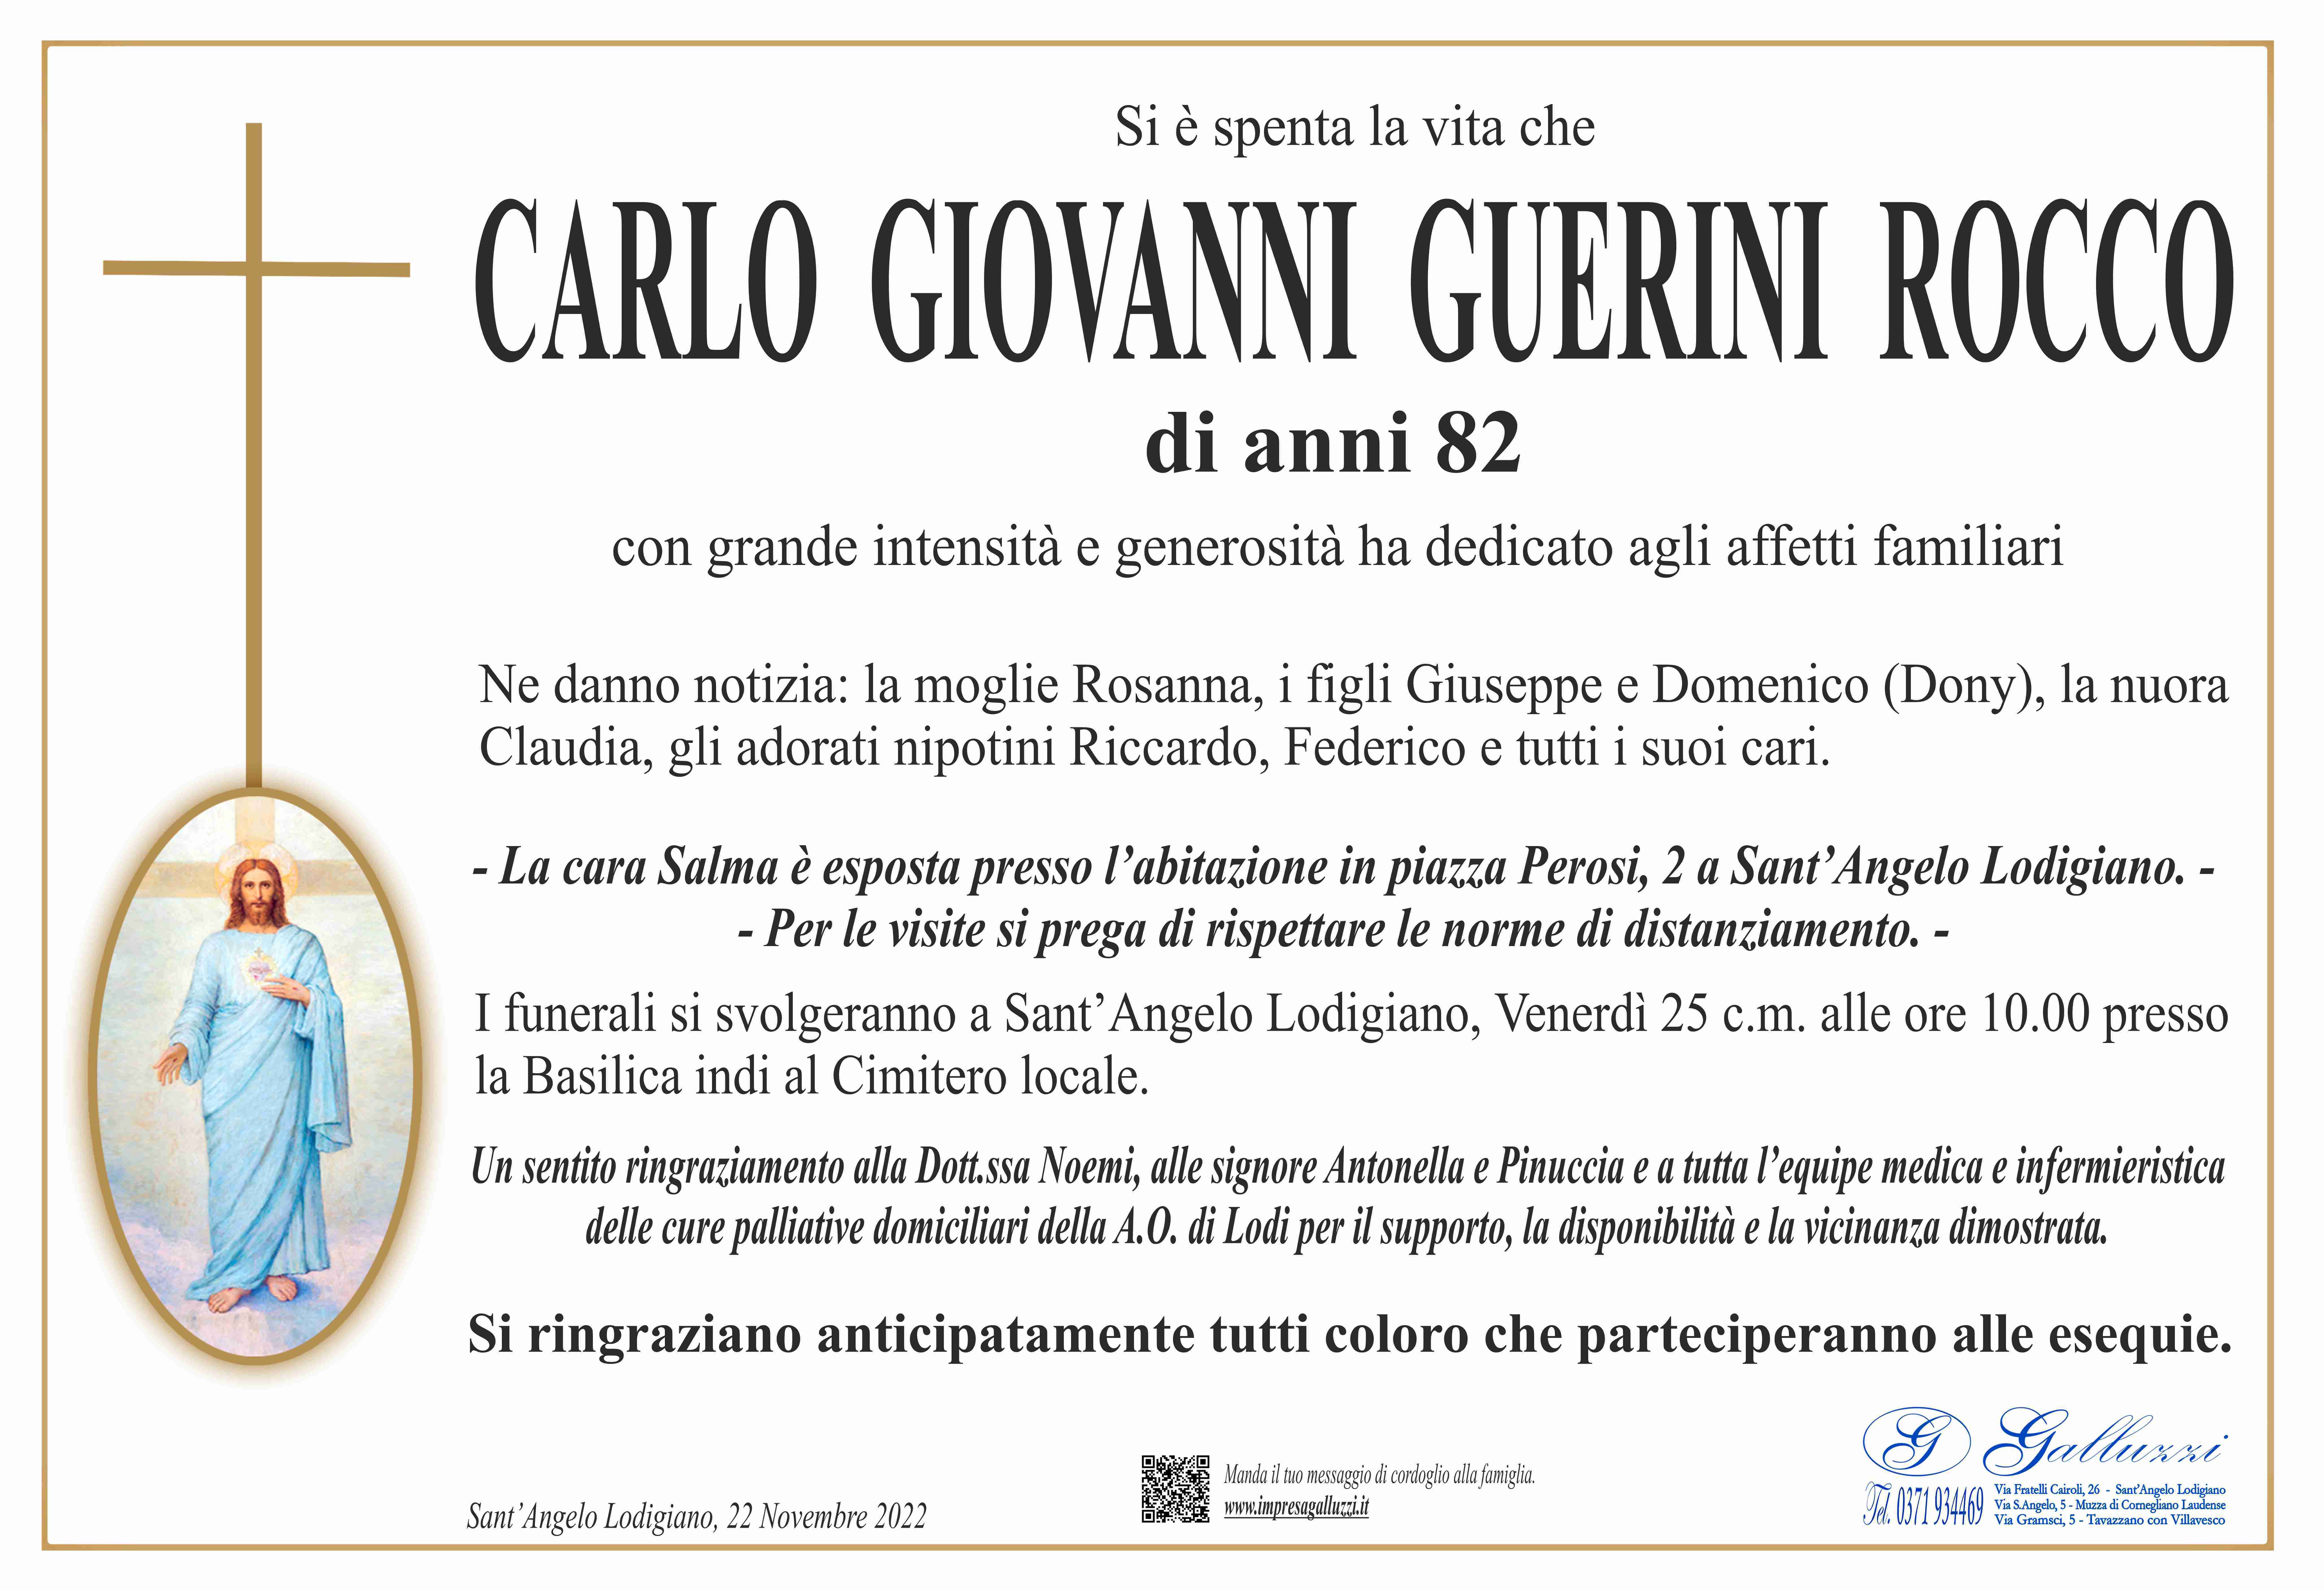 Carlo Giovanni Guerini Rocco